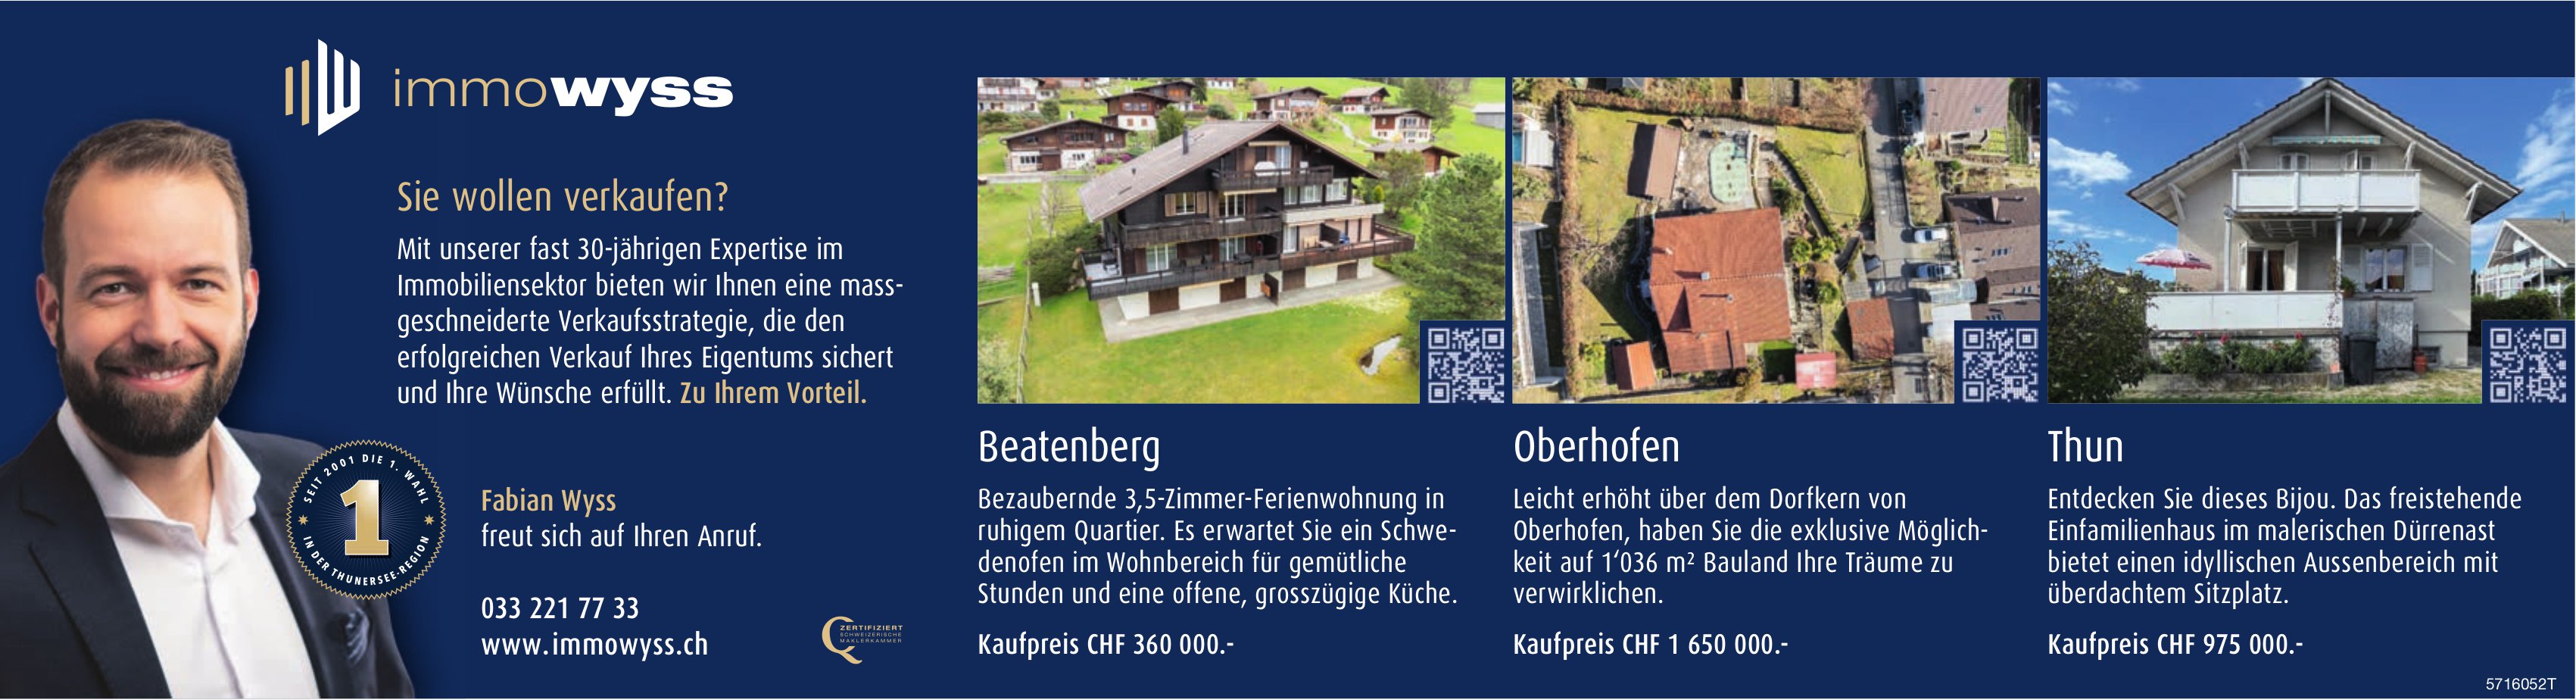 3.5-Zimmer-Wohnung, Bauland und Einfamilienhaus, Beatenberg, Oberhofen & Thun, zu verkaufen